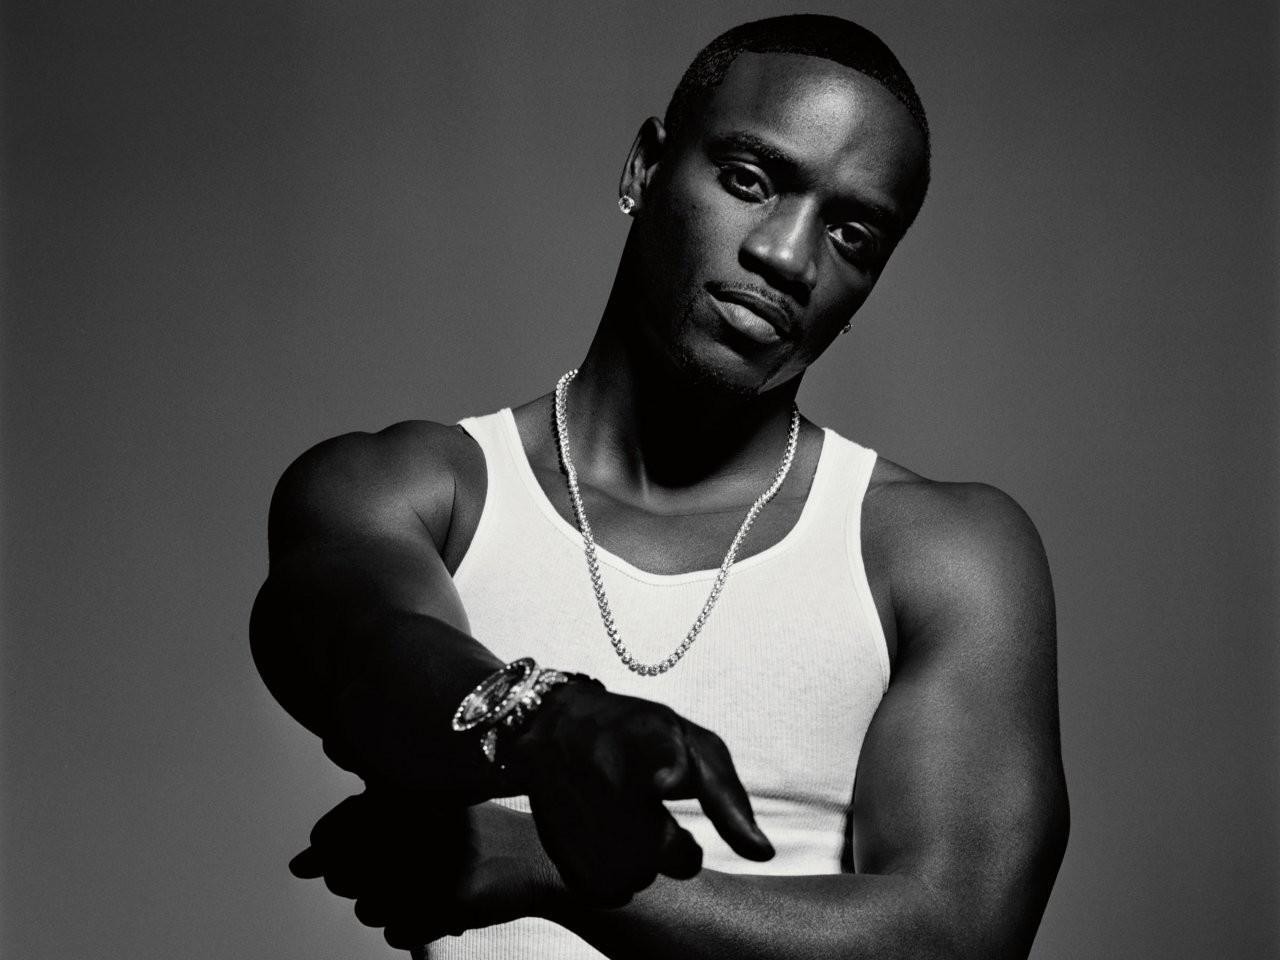 Akon singer hd images